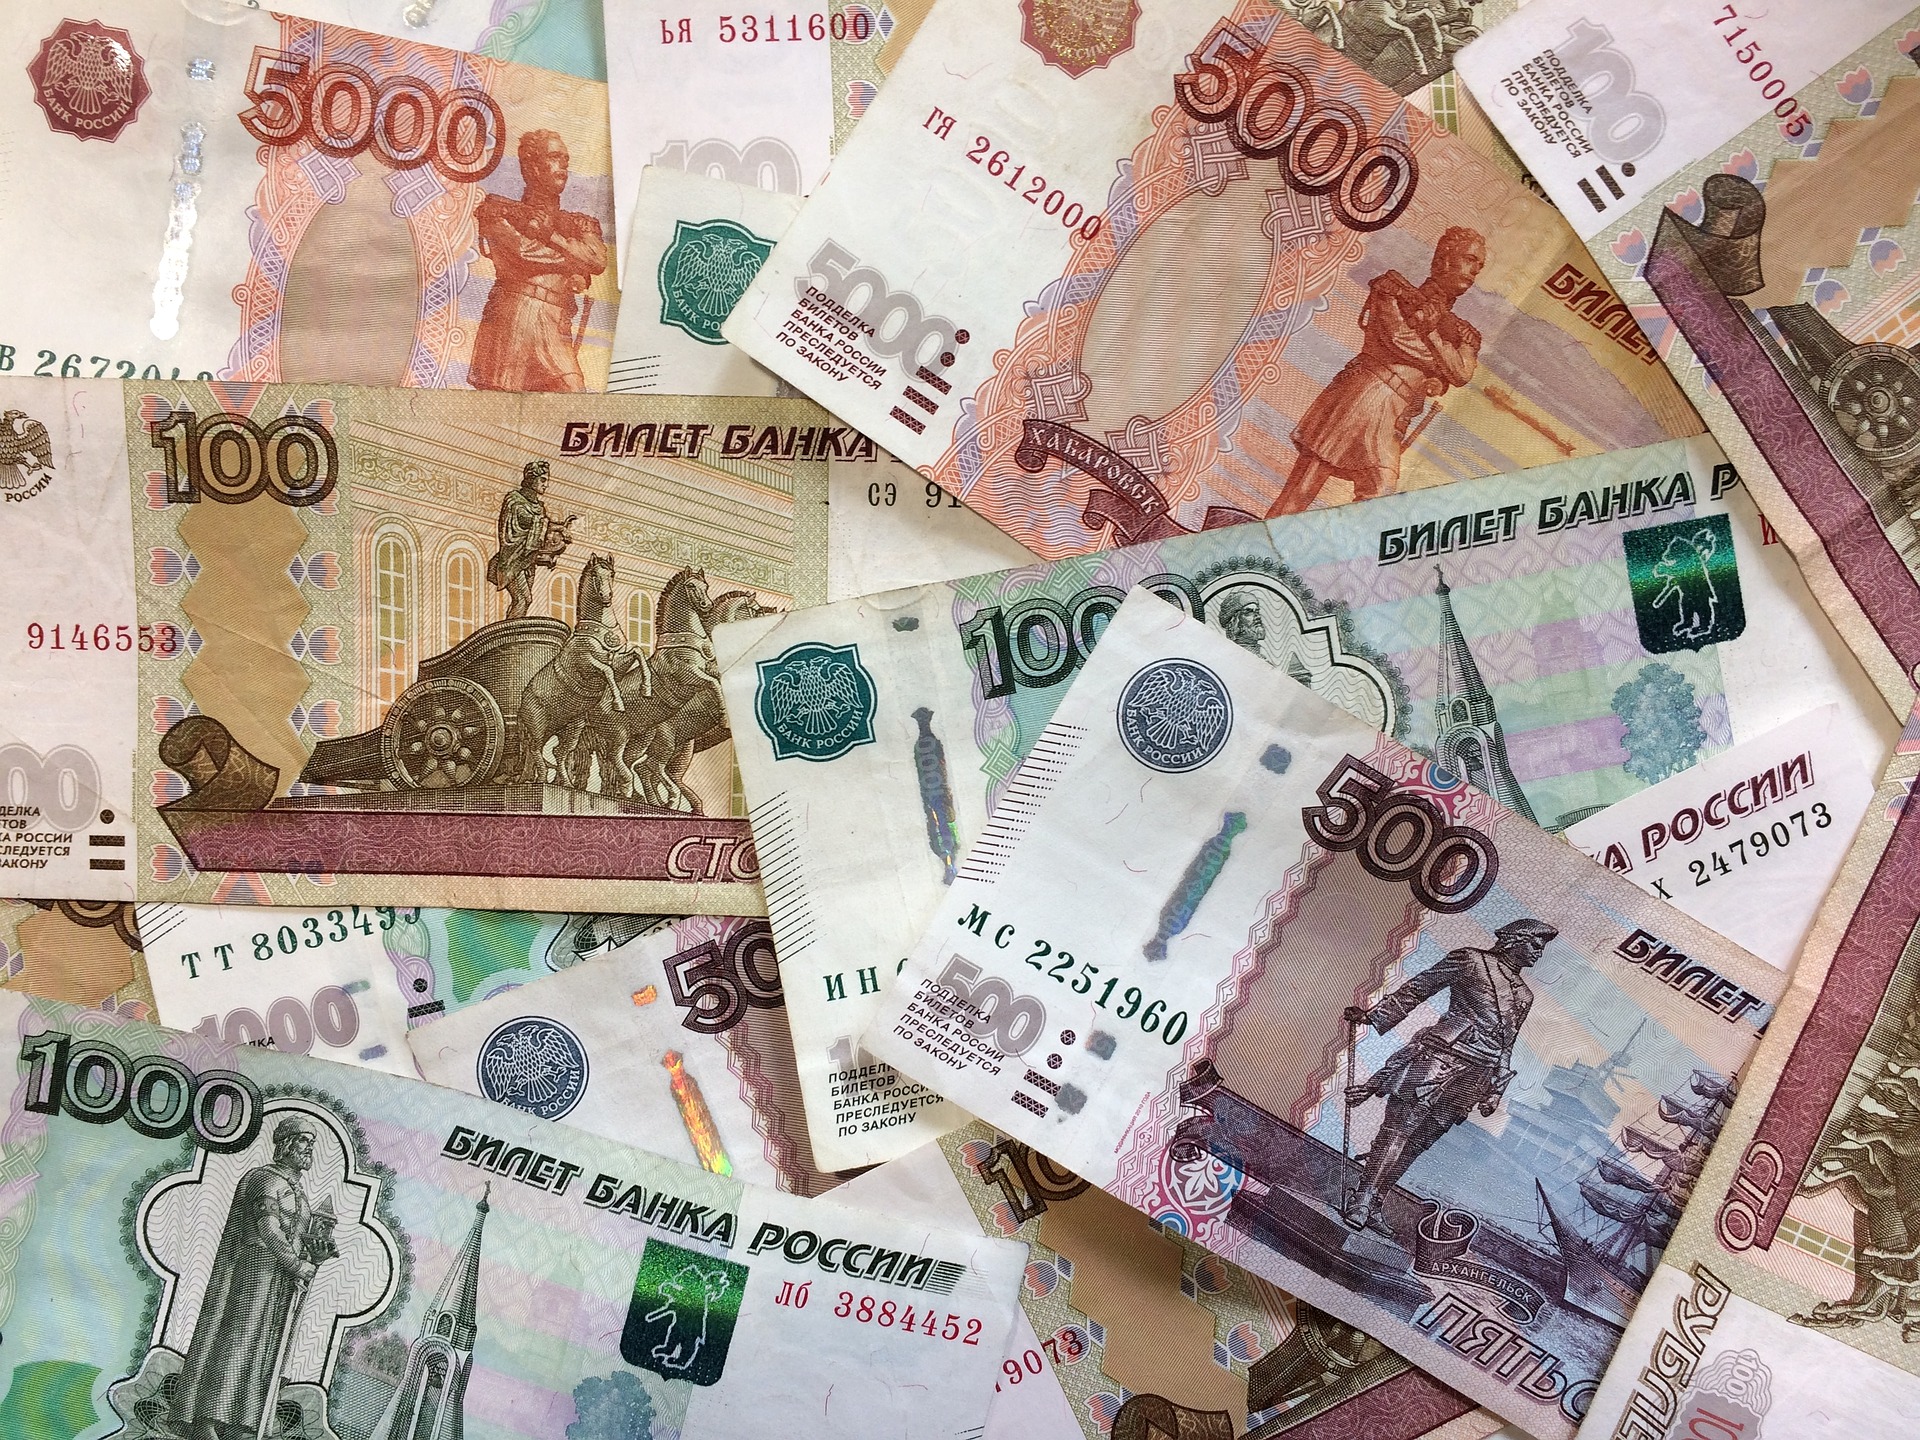 Slovacia se supune și anunță că va plăti gazele în ruble